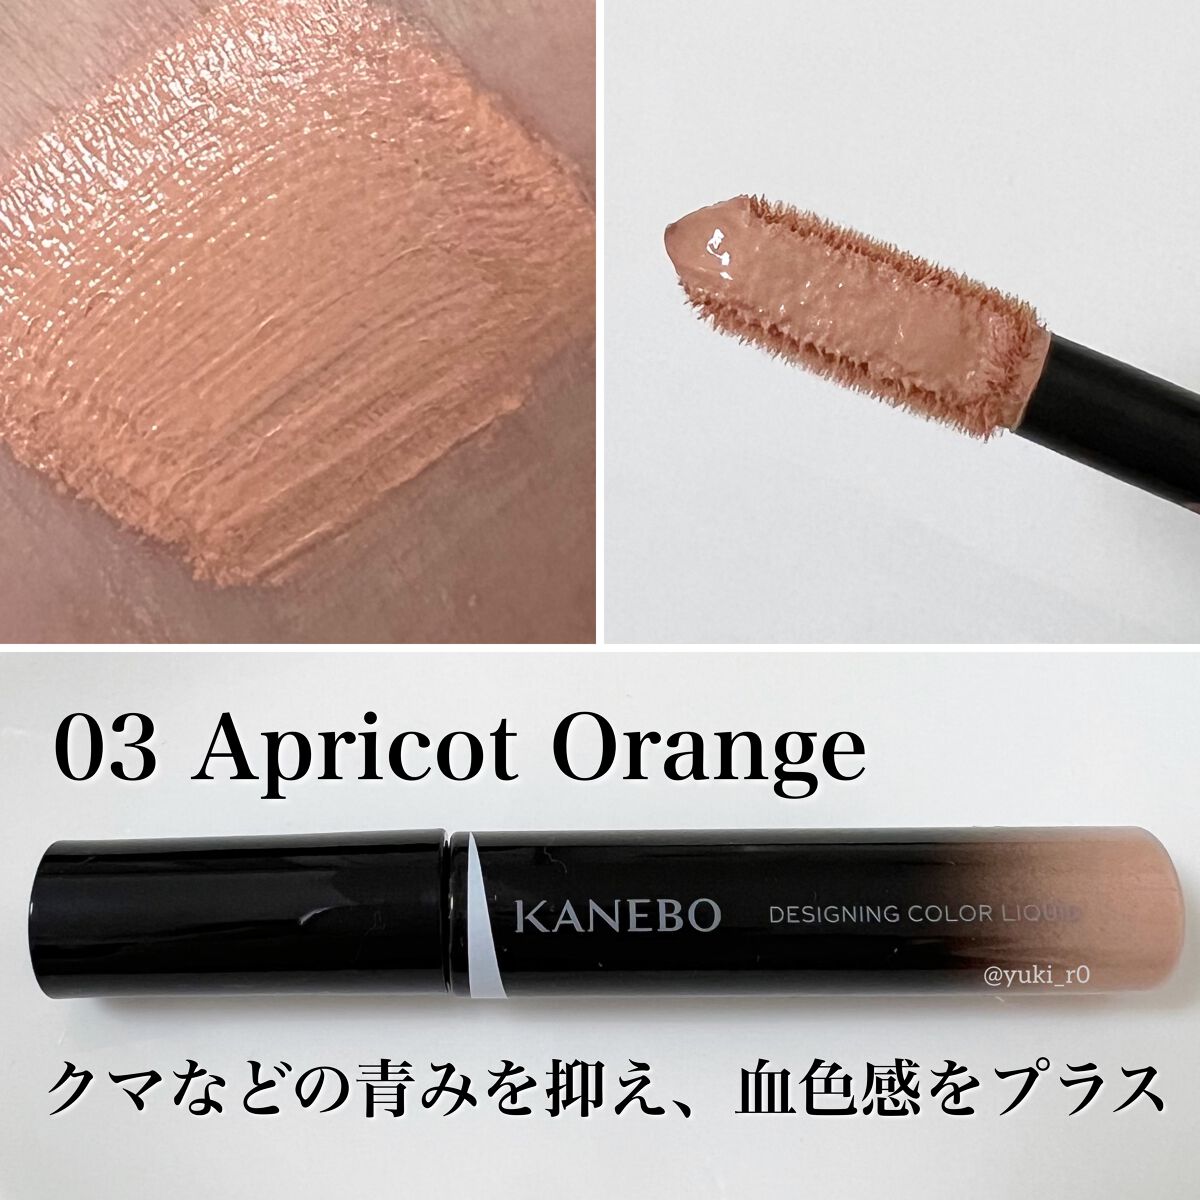 カネボウ デザイニングカラーリクイド 03 Apricot Orange